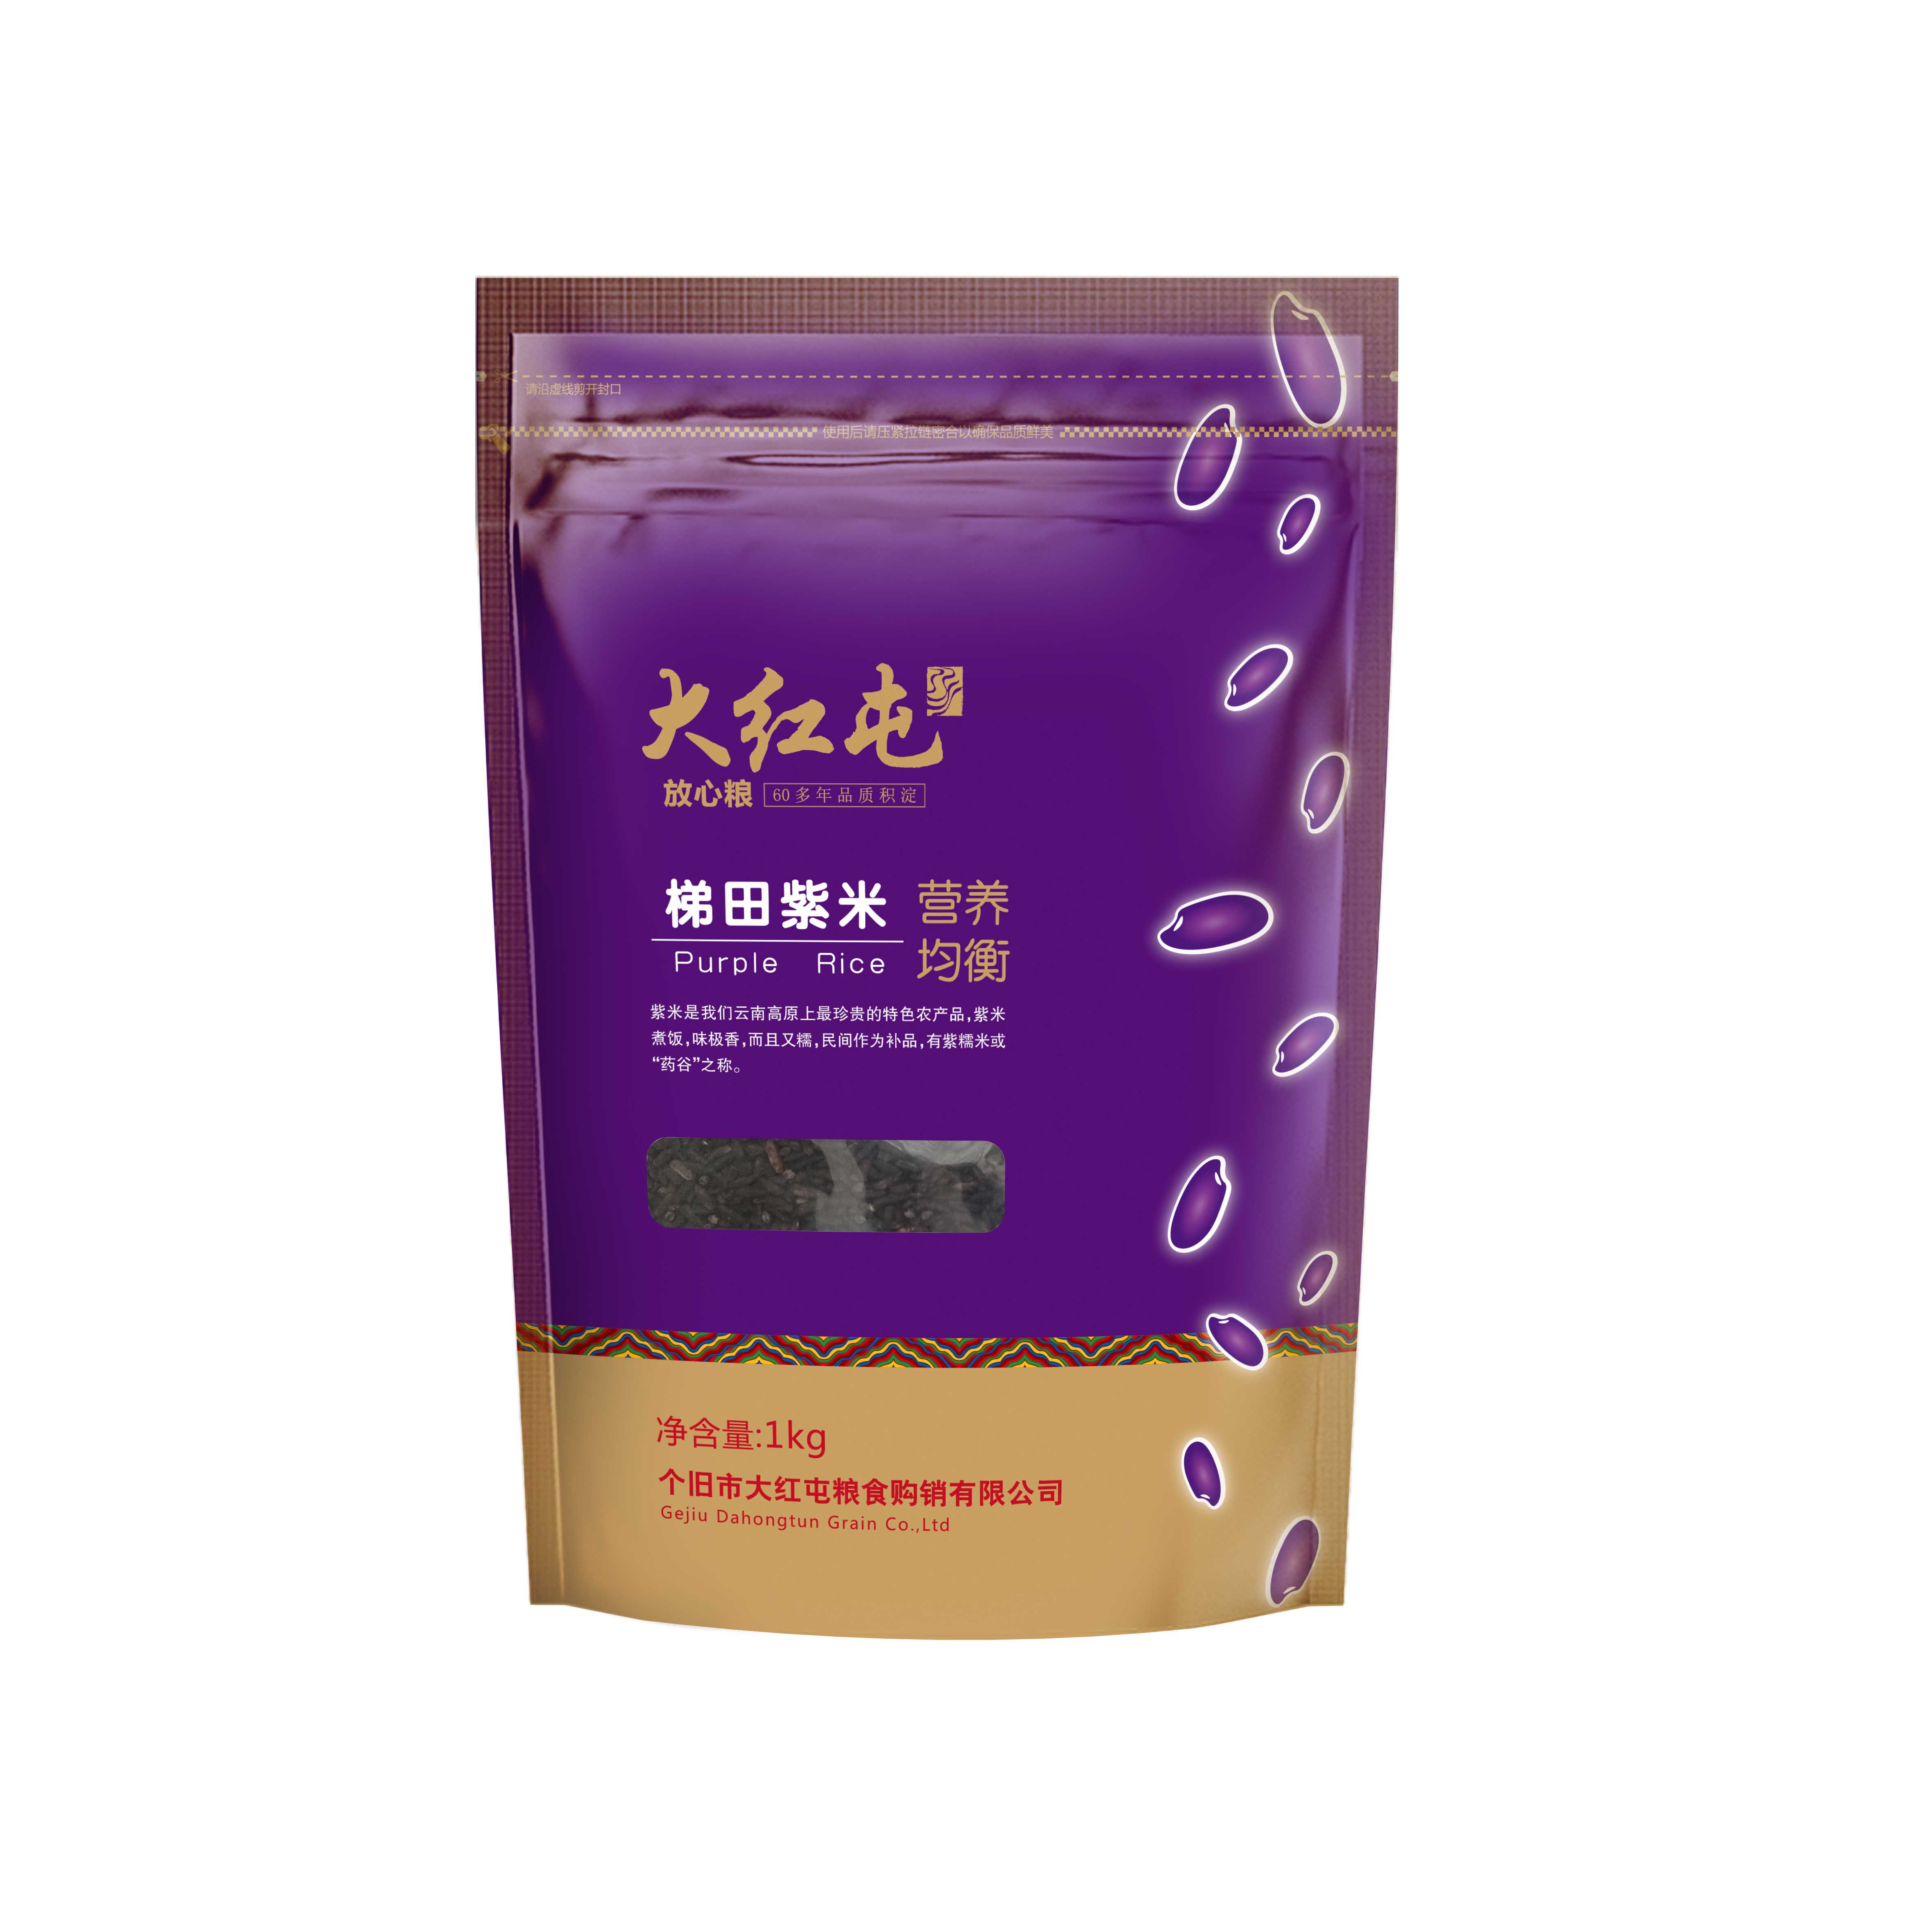 1kg紫米